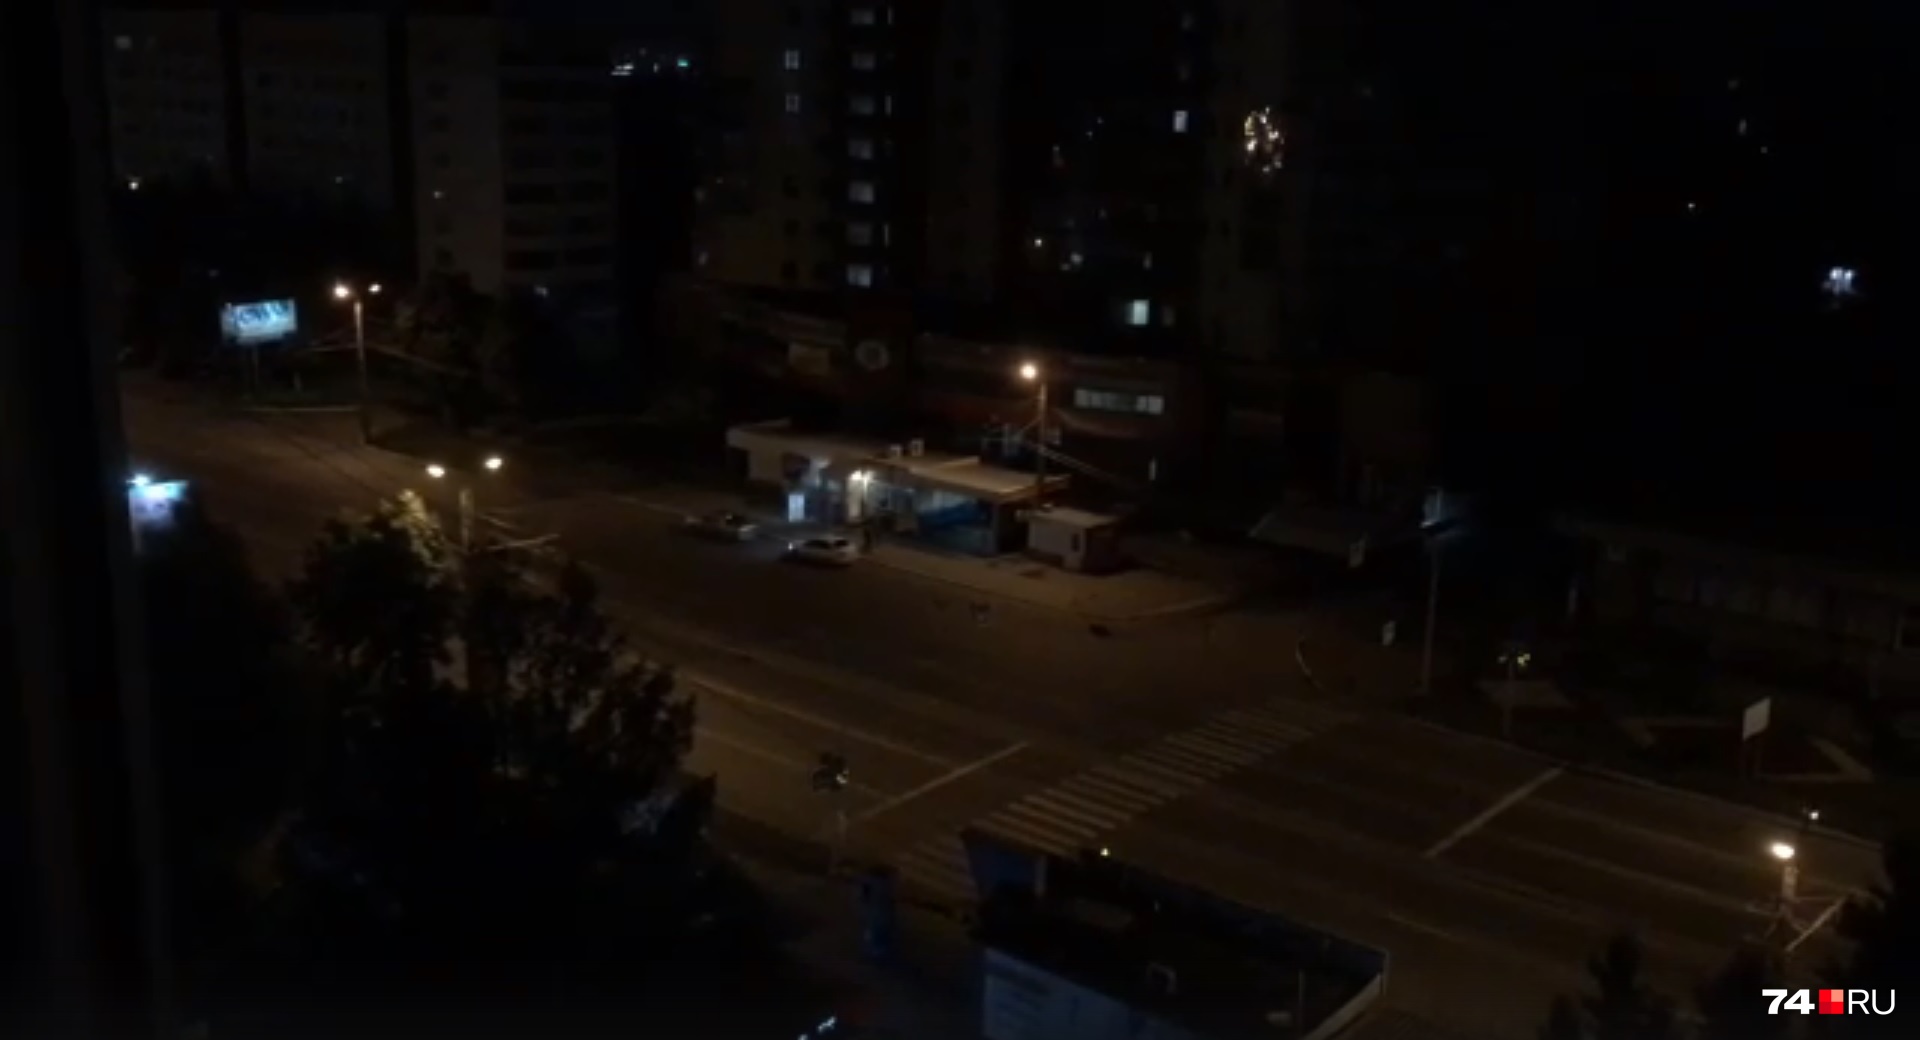 «Пьяные по дворам»: ночью на челябинском проспекте компания устроила оглушительную дискотеку